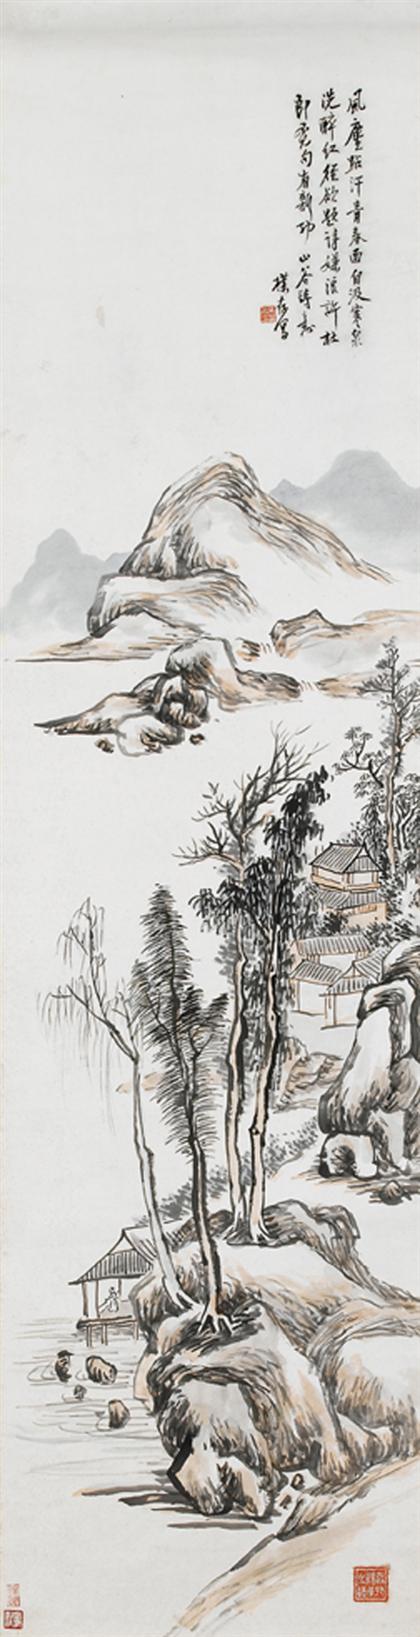 HUANG BIN-HUNG  chinese, (1864-1955),